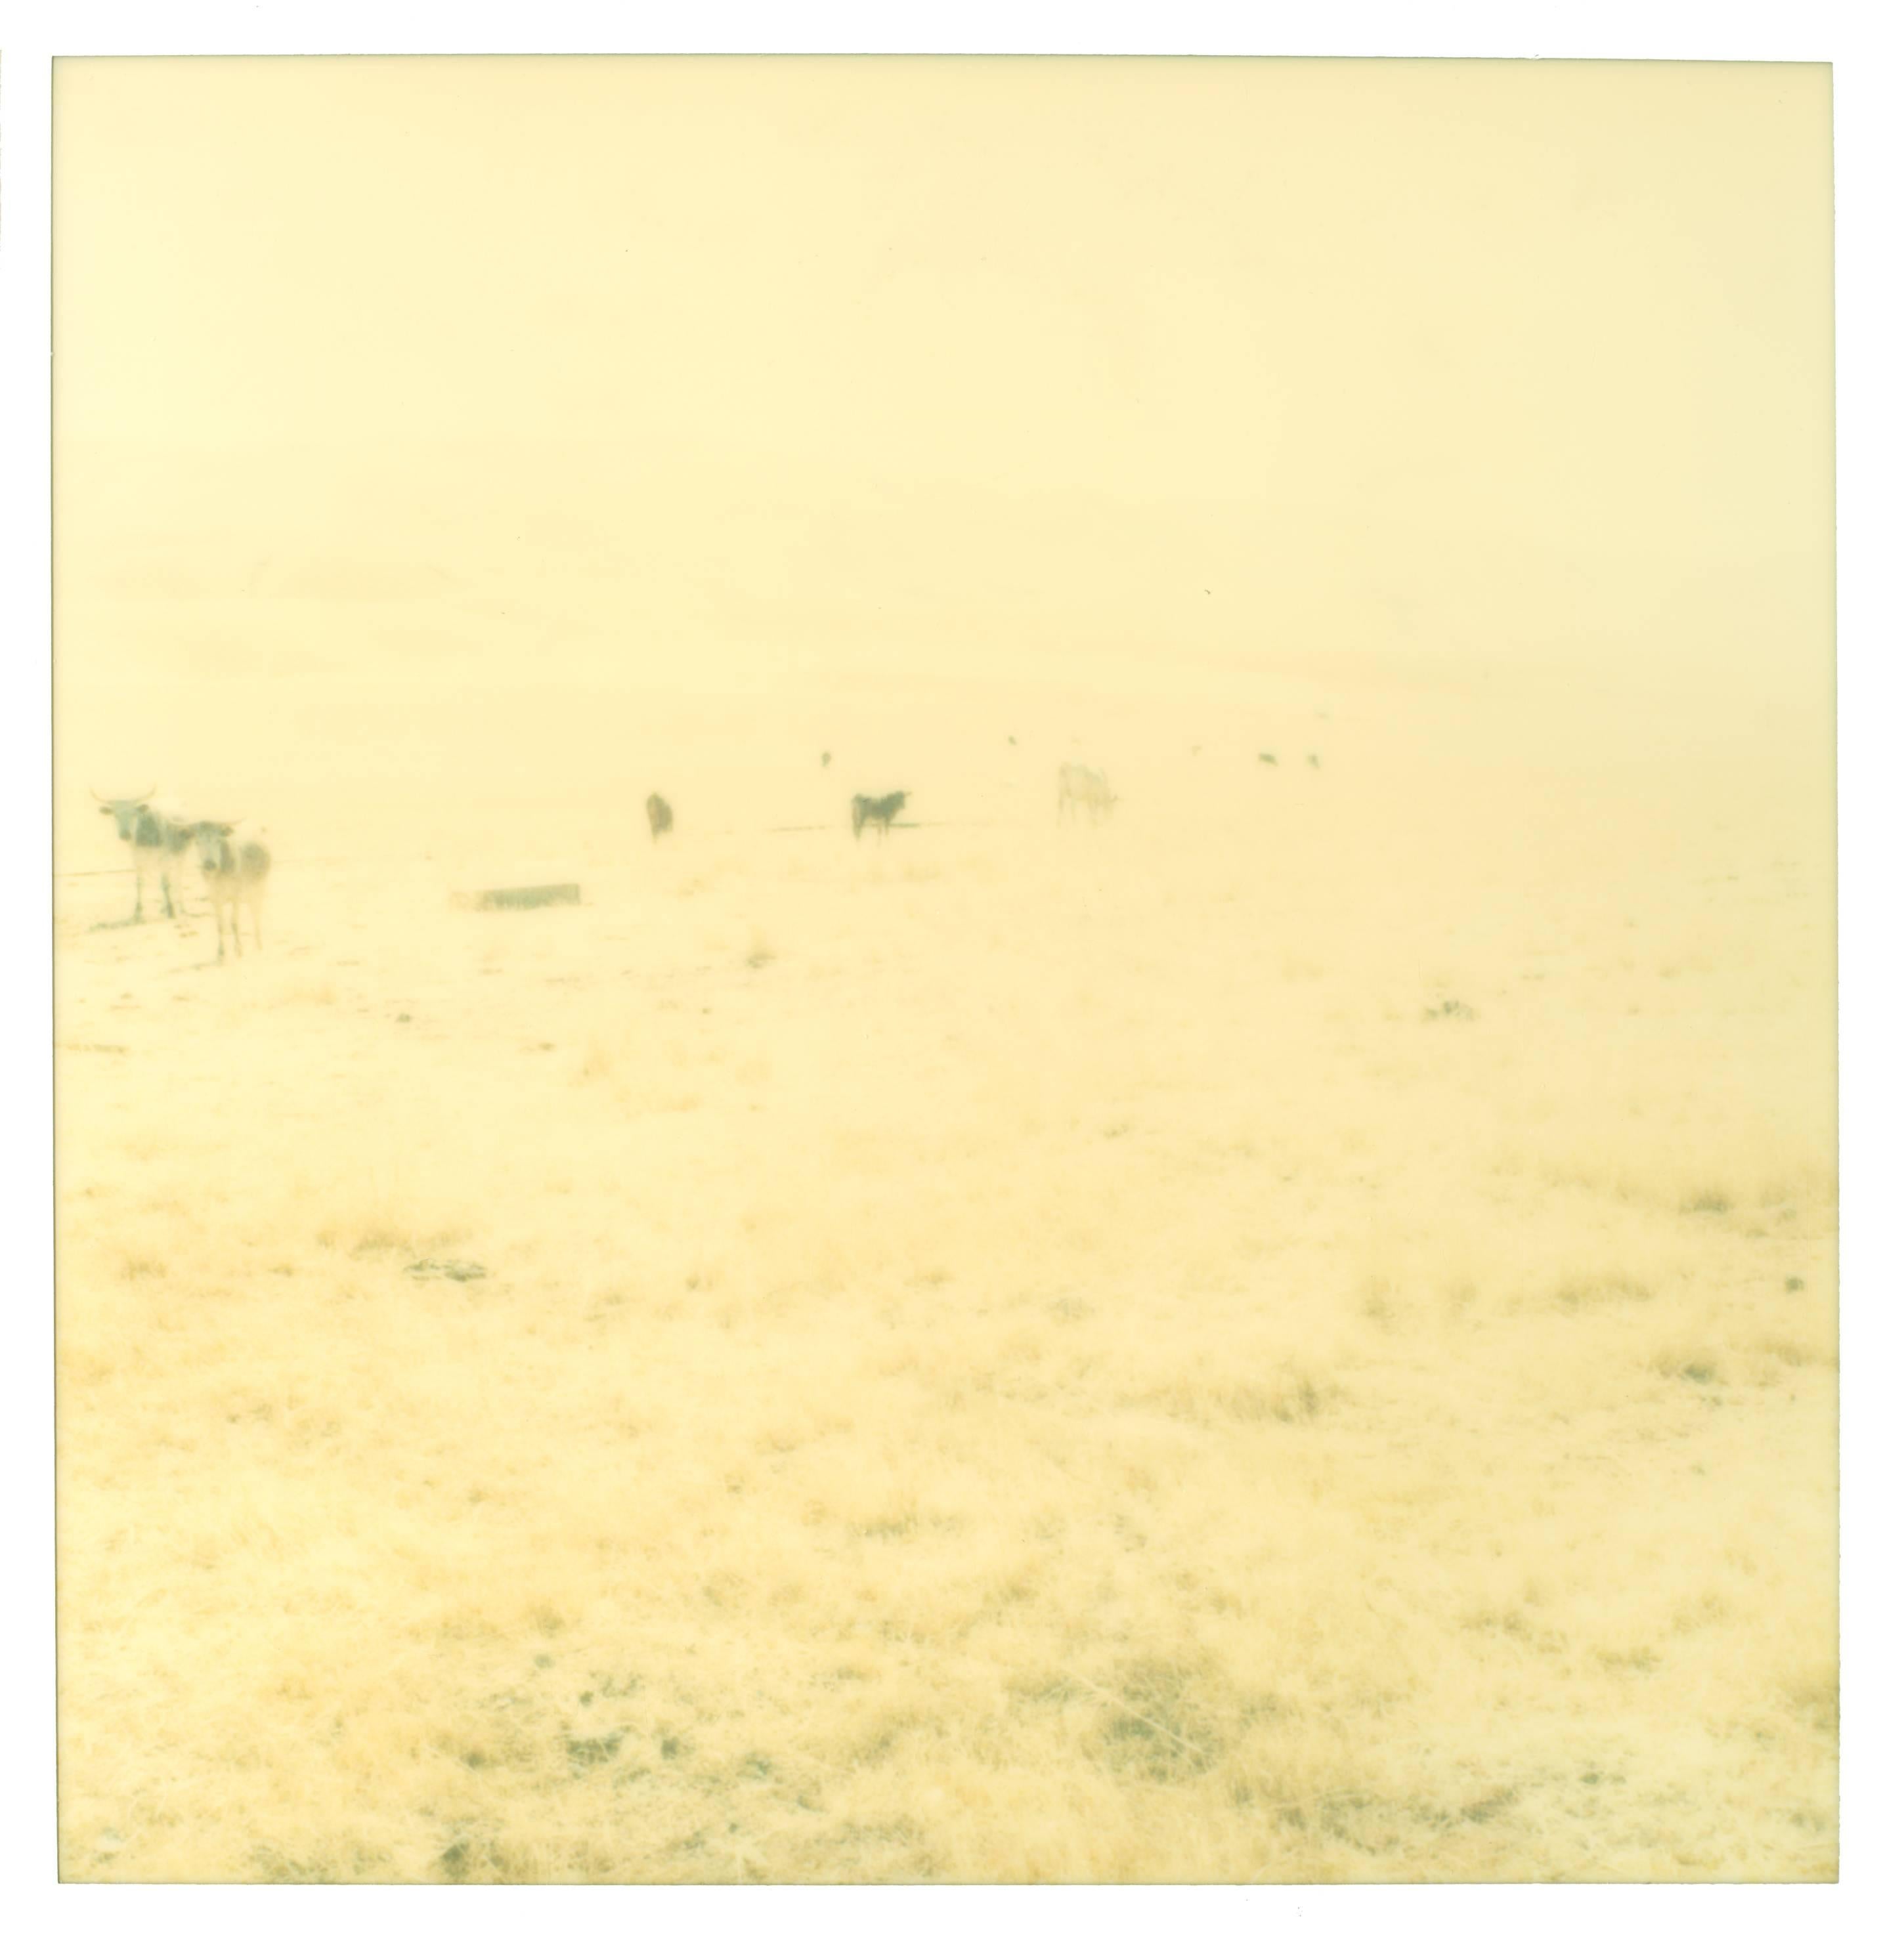 Stefanie Schneider Landscape Photograph - Untitled (Oilfields) Contemporary, 21st Century, Desert, Polaroid, Landscape